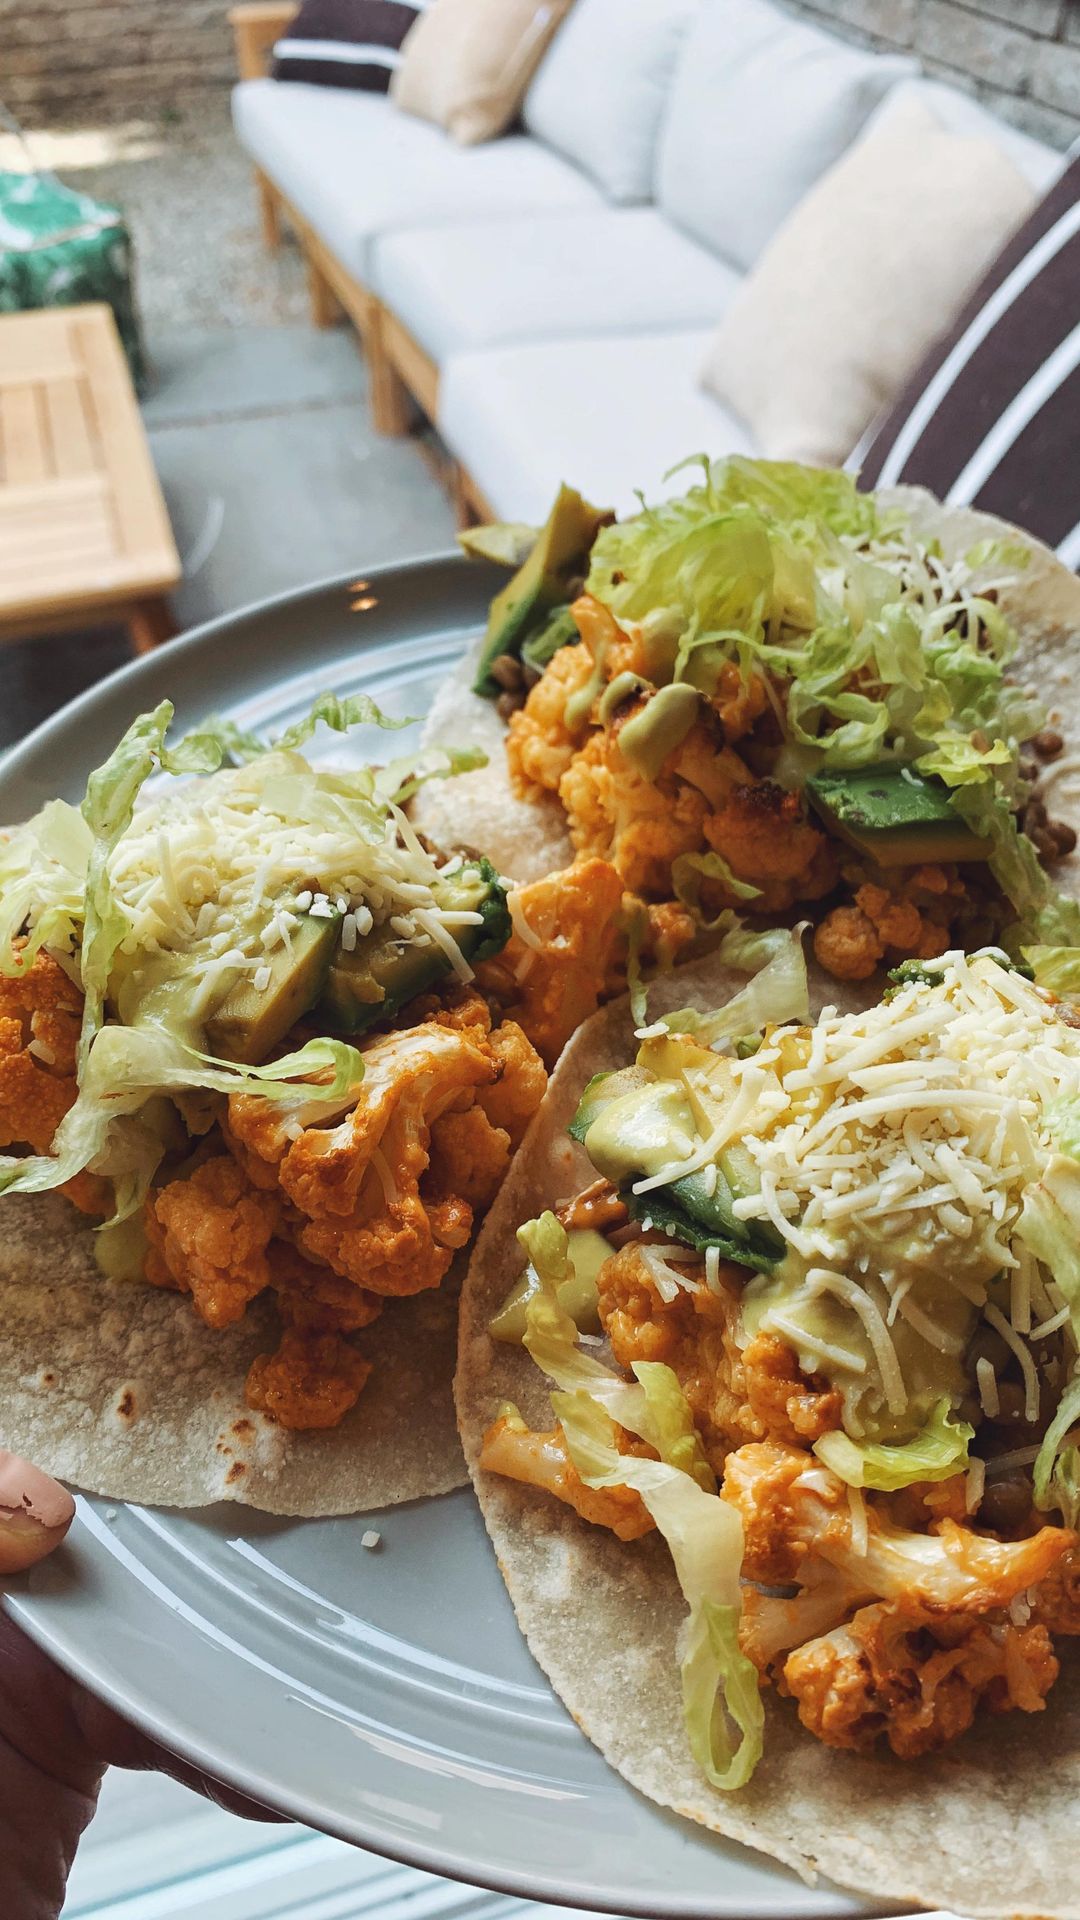 Buffalo Cauliflower and Lentil Tacos with Avocado